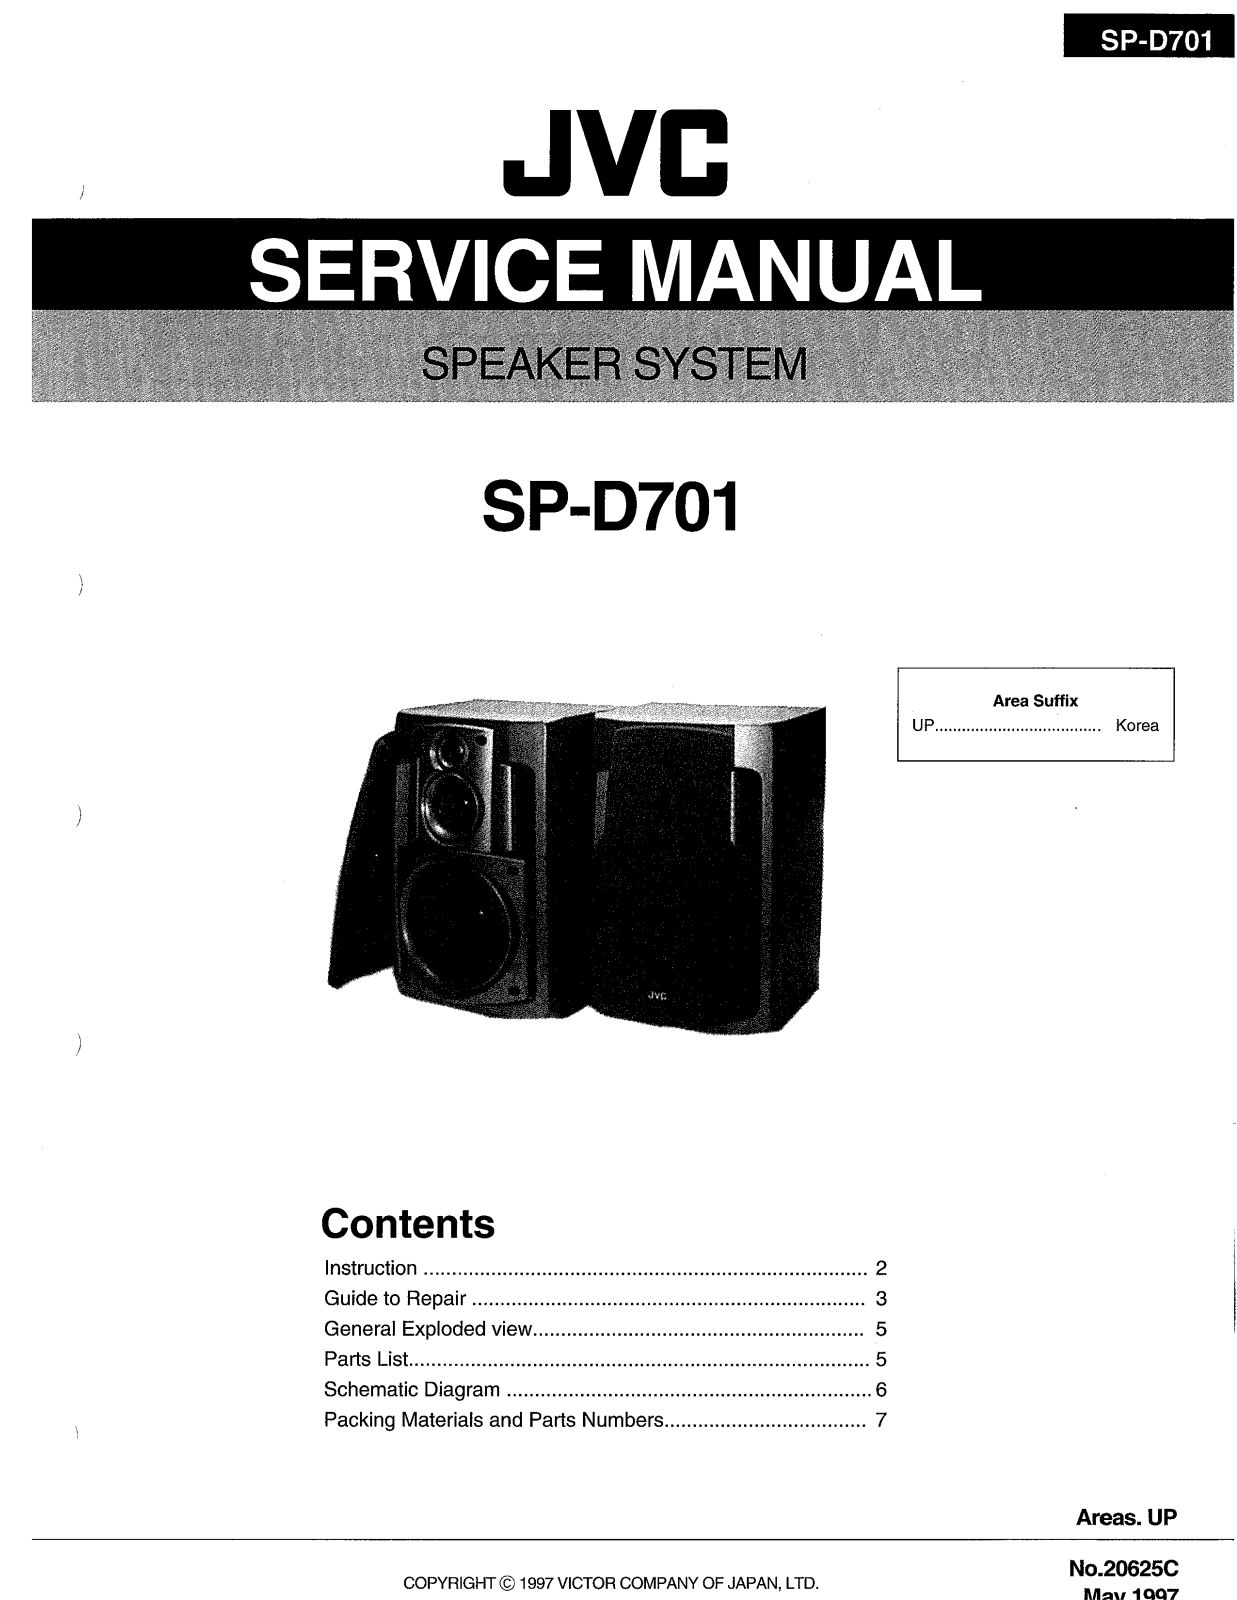 JVC SP-D701 Service Manual